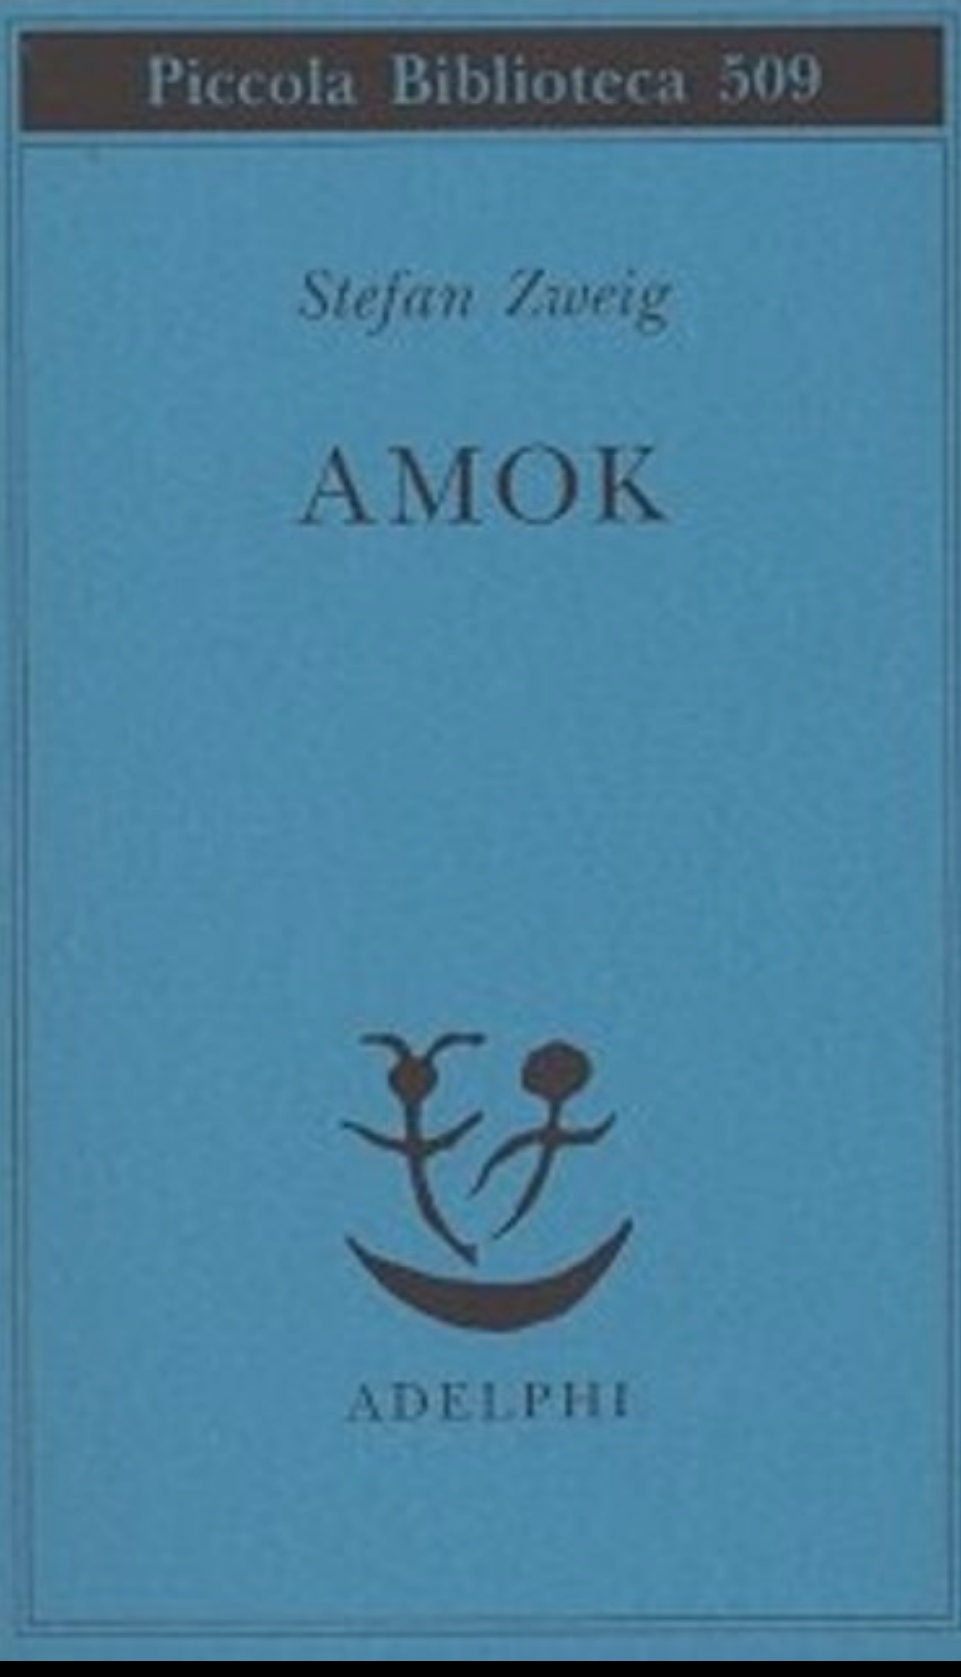 Amok (EBook, Italiano language, 2004, Adelphi)